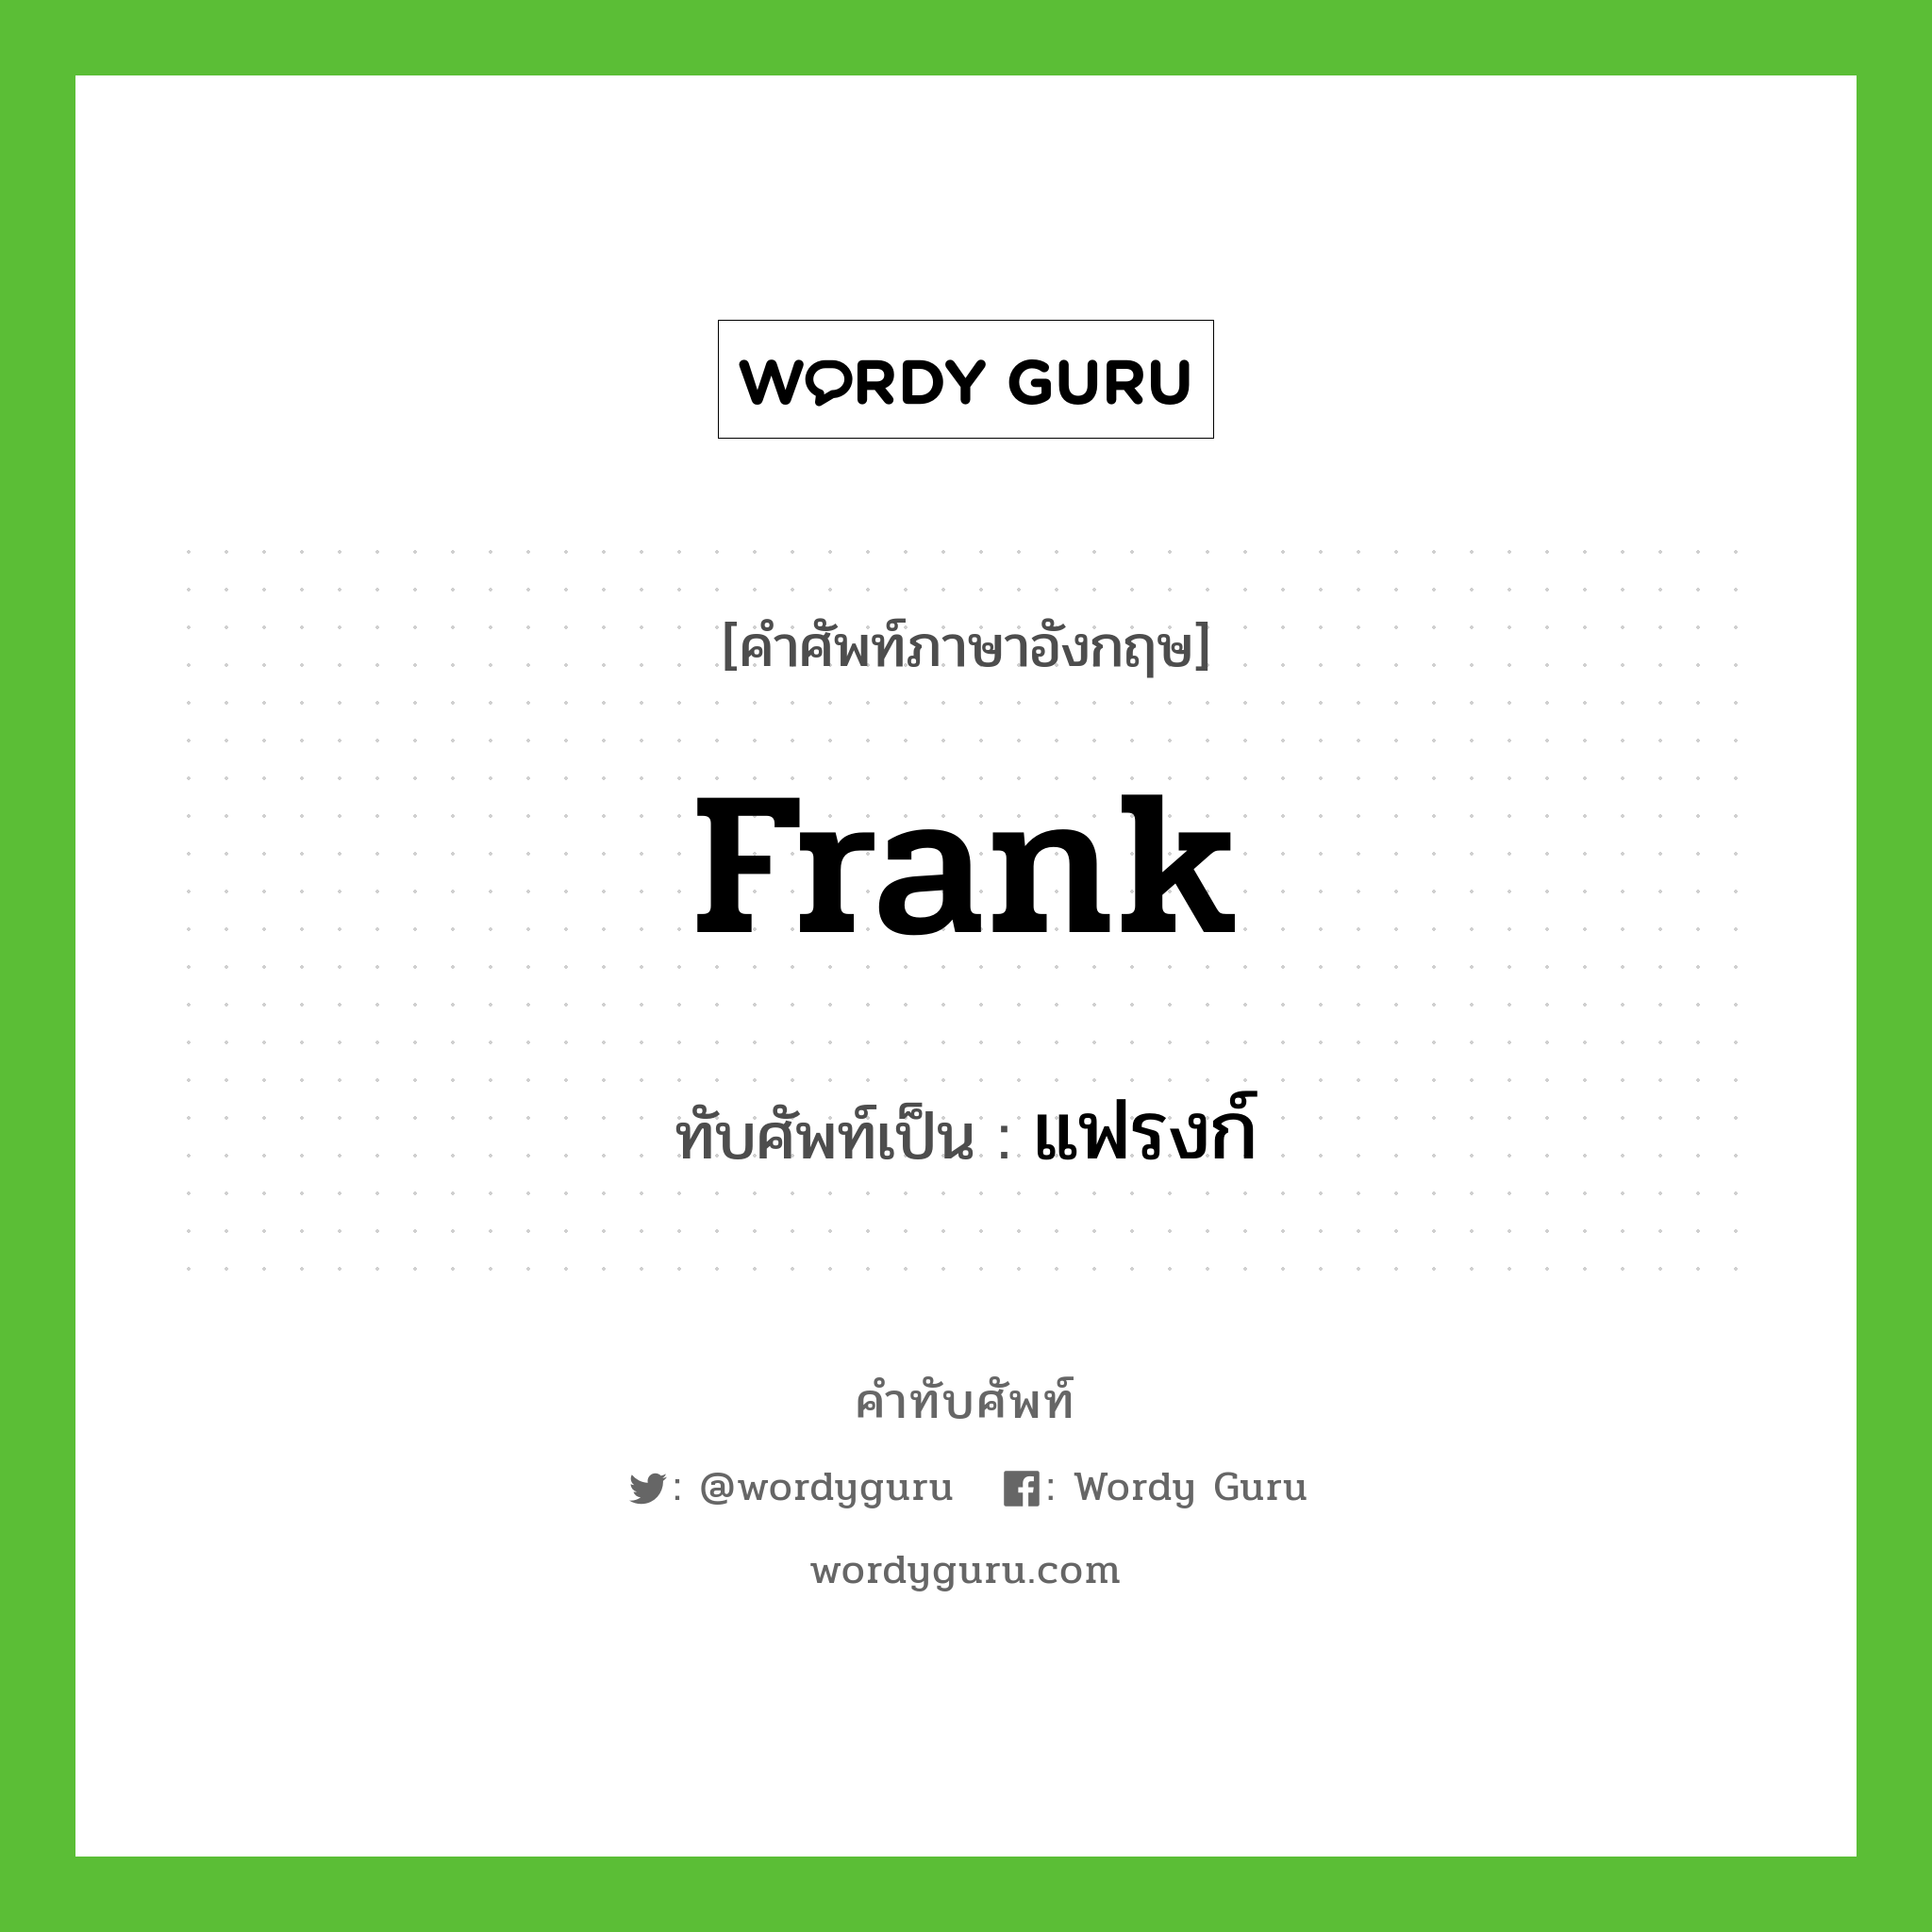 Frank เขียนเป็นคำไทยว่าอะไร?, คำศัพท์ภาษาอังกฤษ Frank ทับศัพท์เป็น แฟรงก์